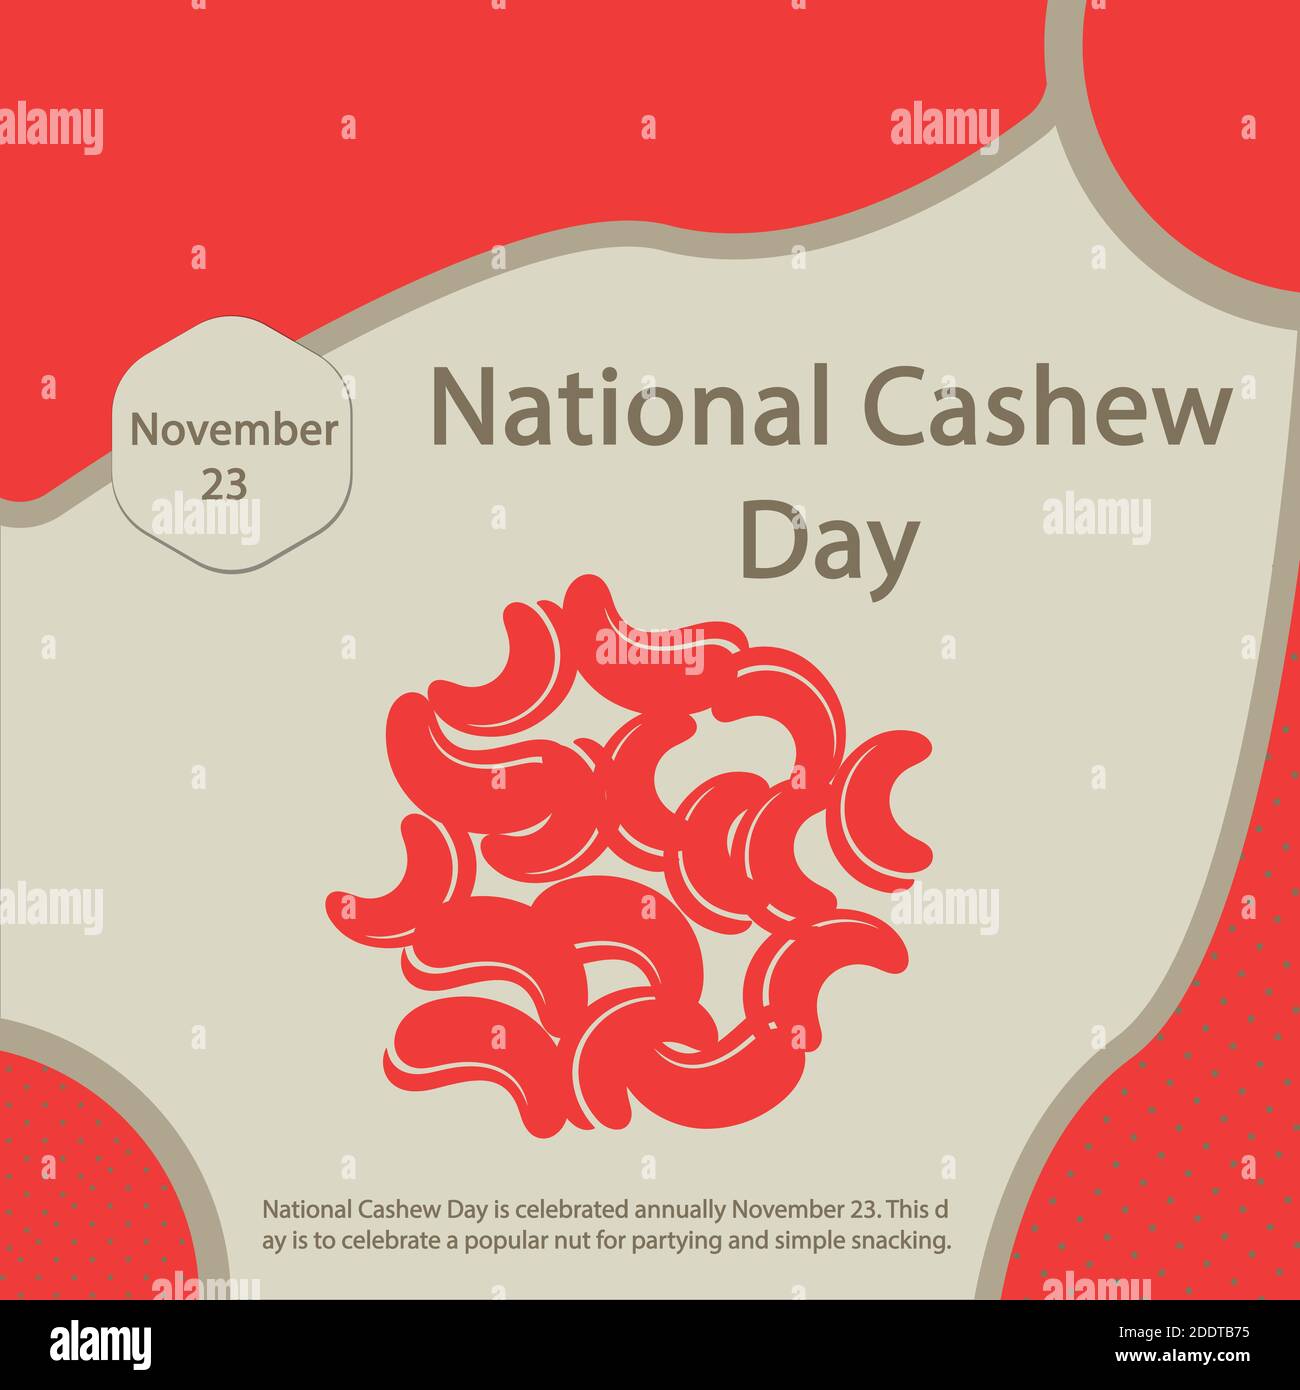 National Cashew Day gefeiert wird jährlich November 23.This Tag ist eine beliebte Mutter für Party und einfache Snacks zu feiern. Stock Vektor